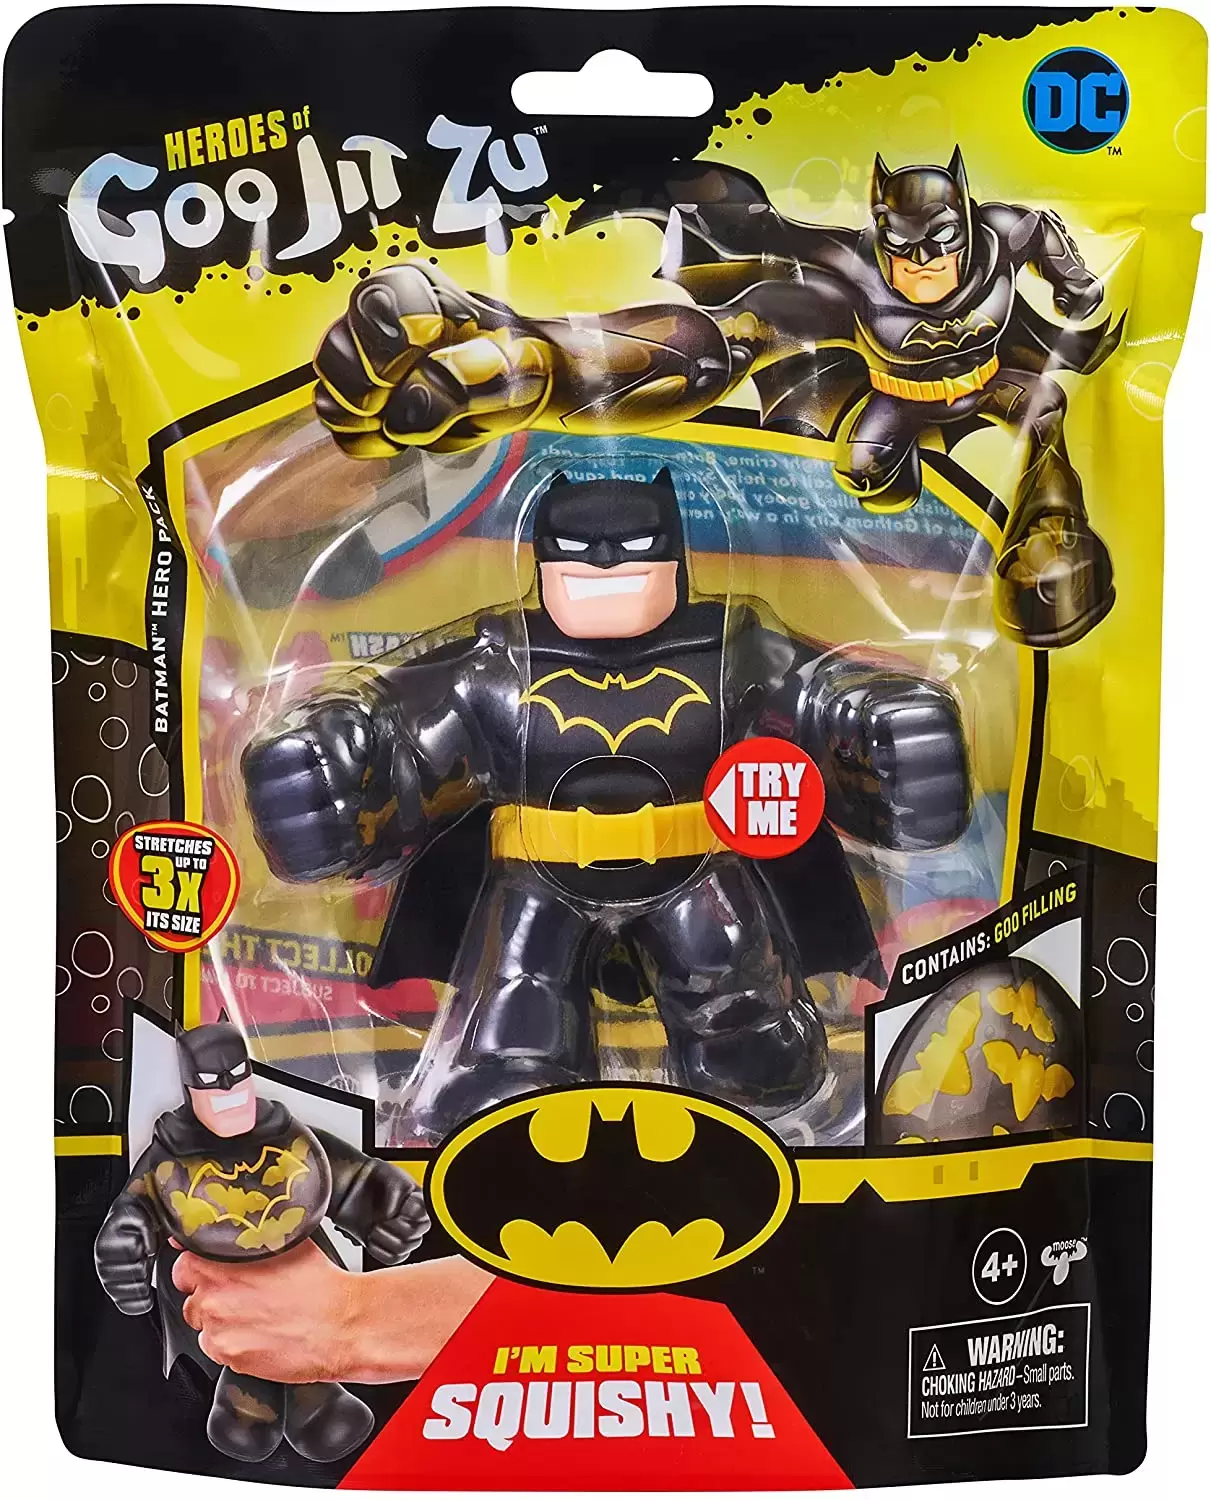 Heroes of Goo Jit Zu - DC - Batman